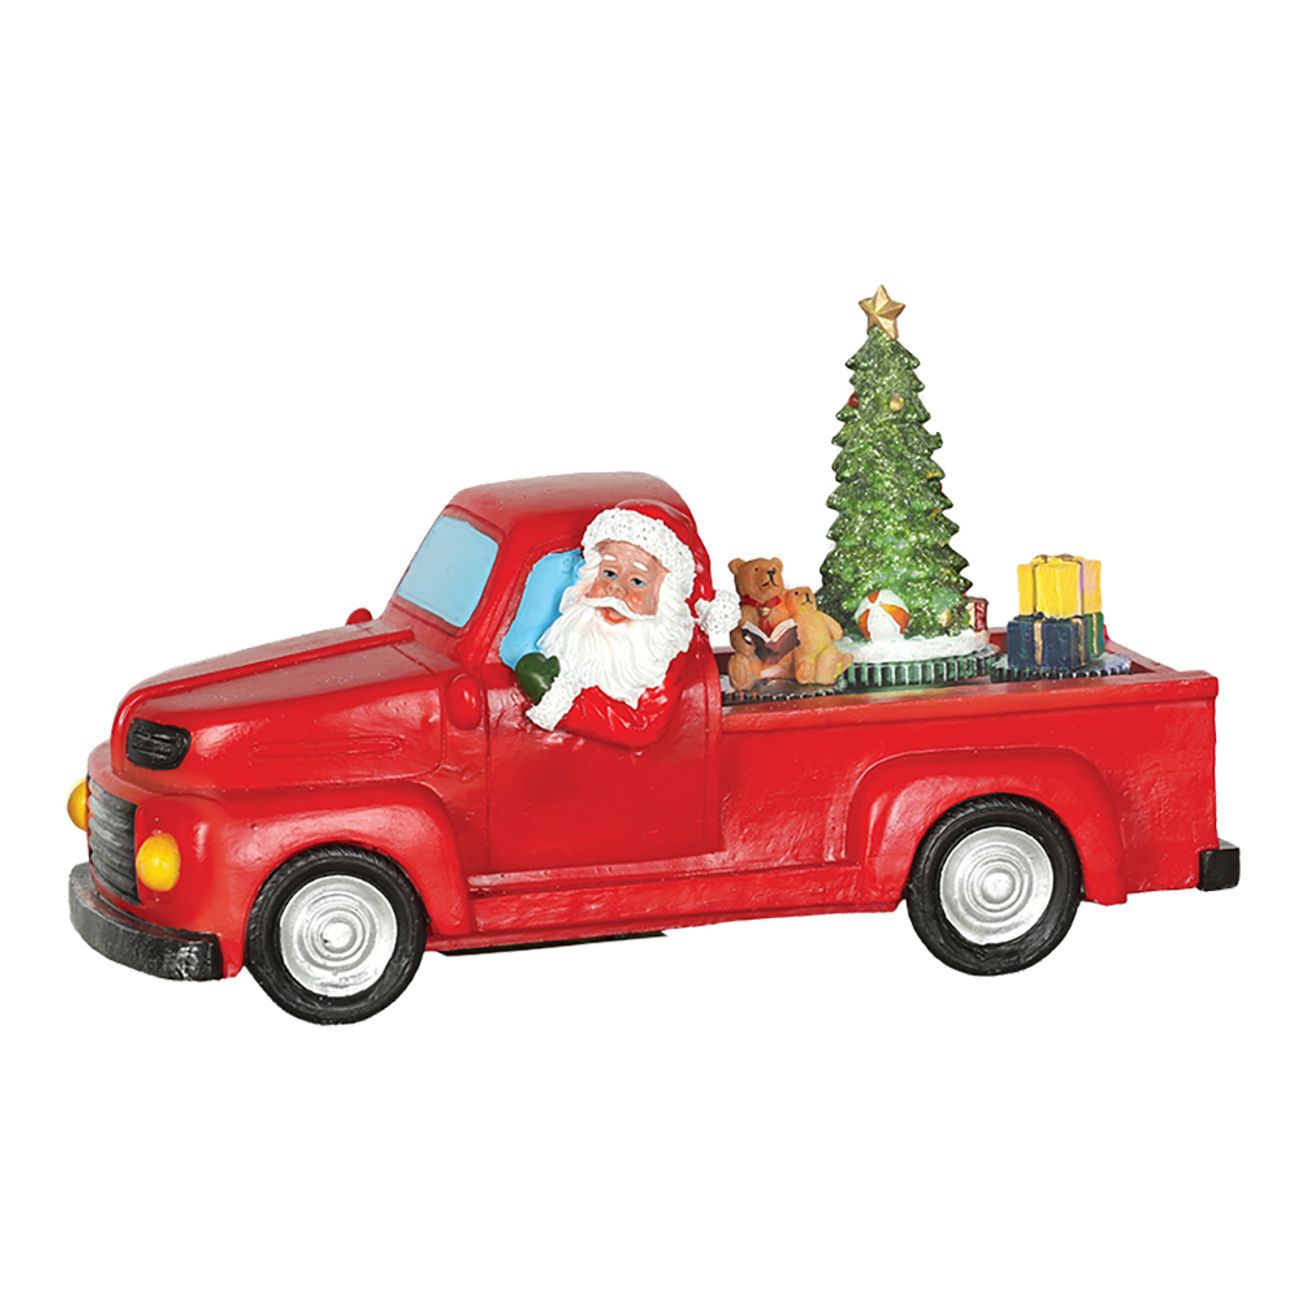 julby-santa-truck-80679-1